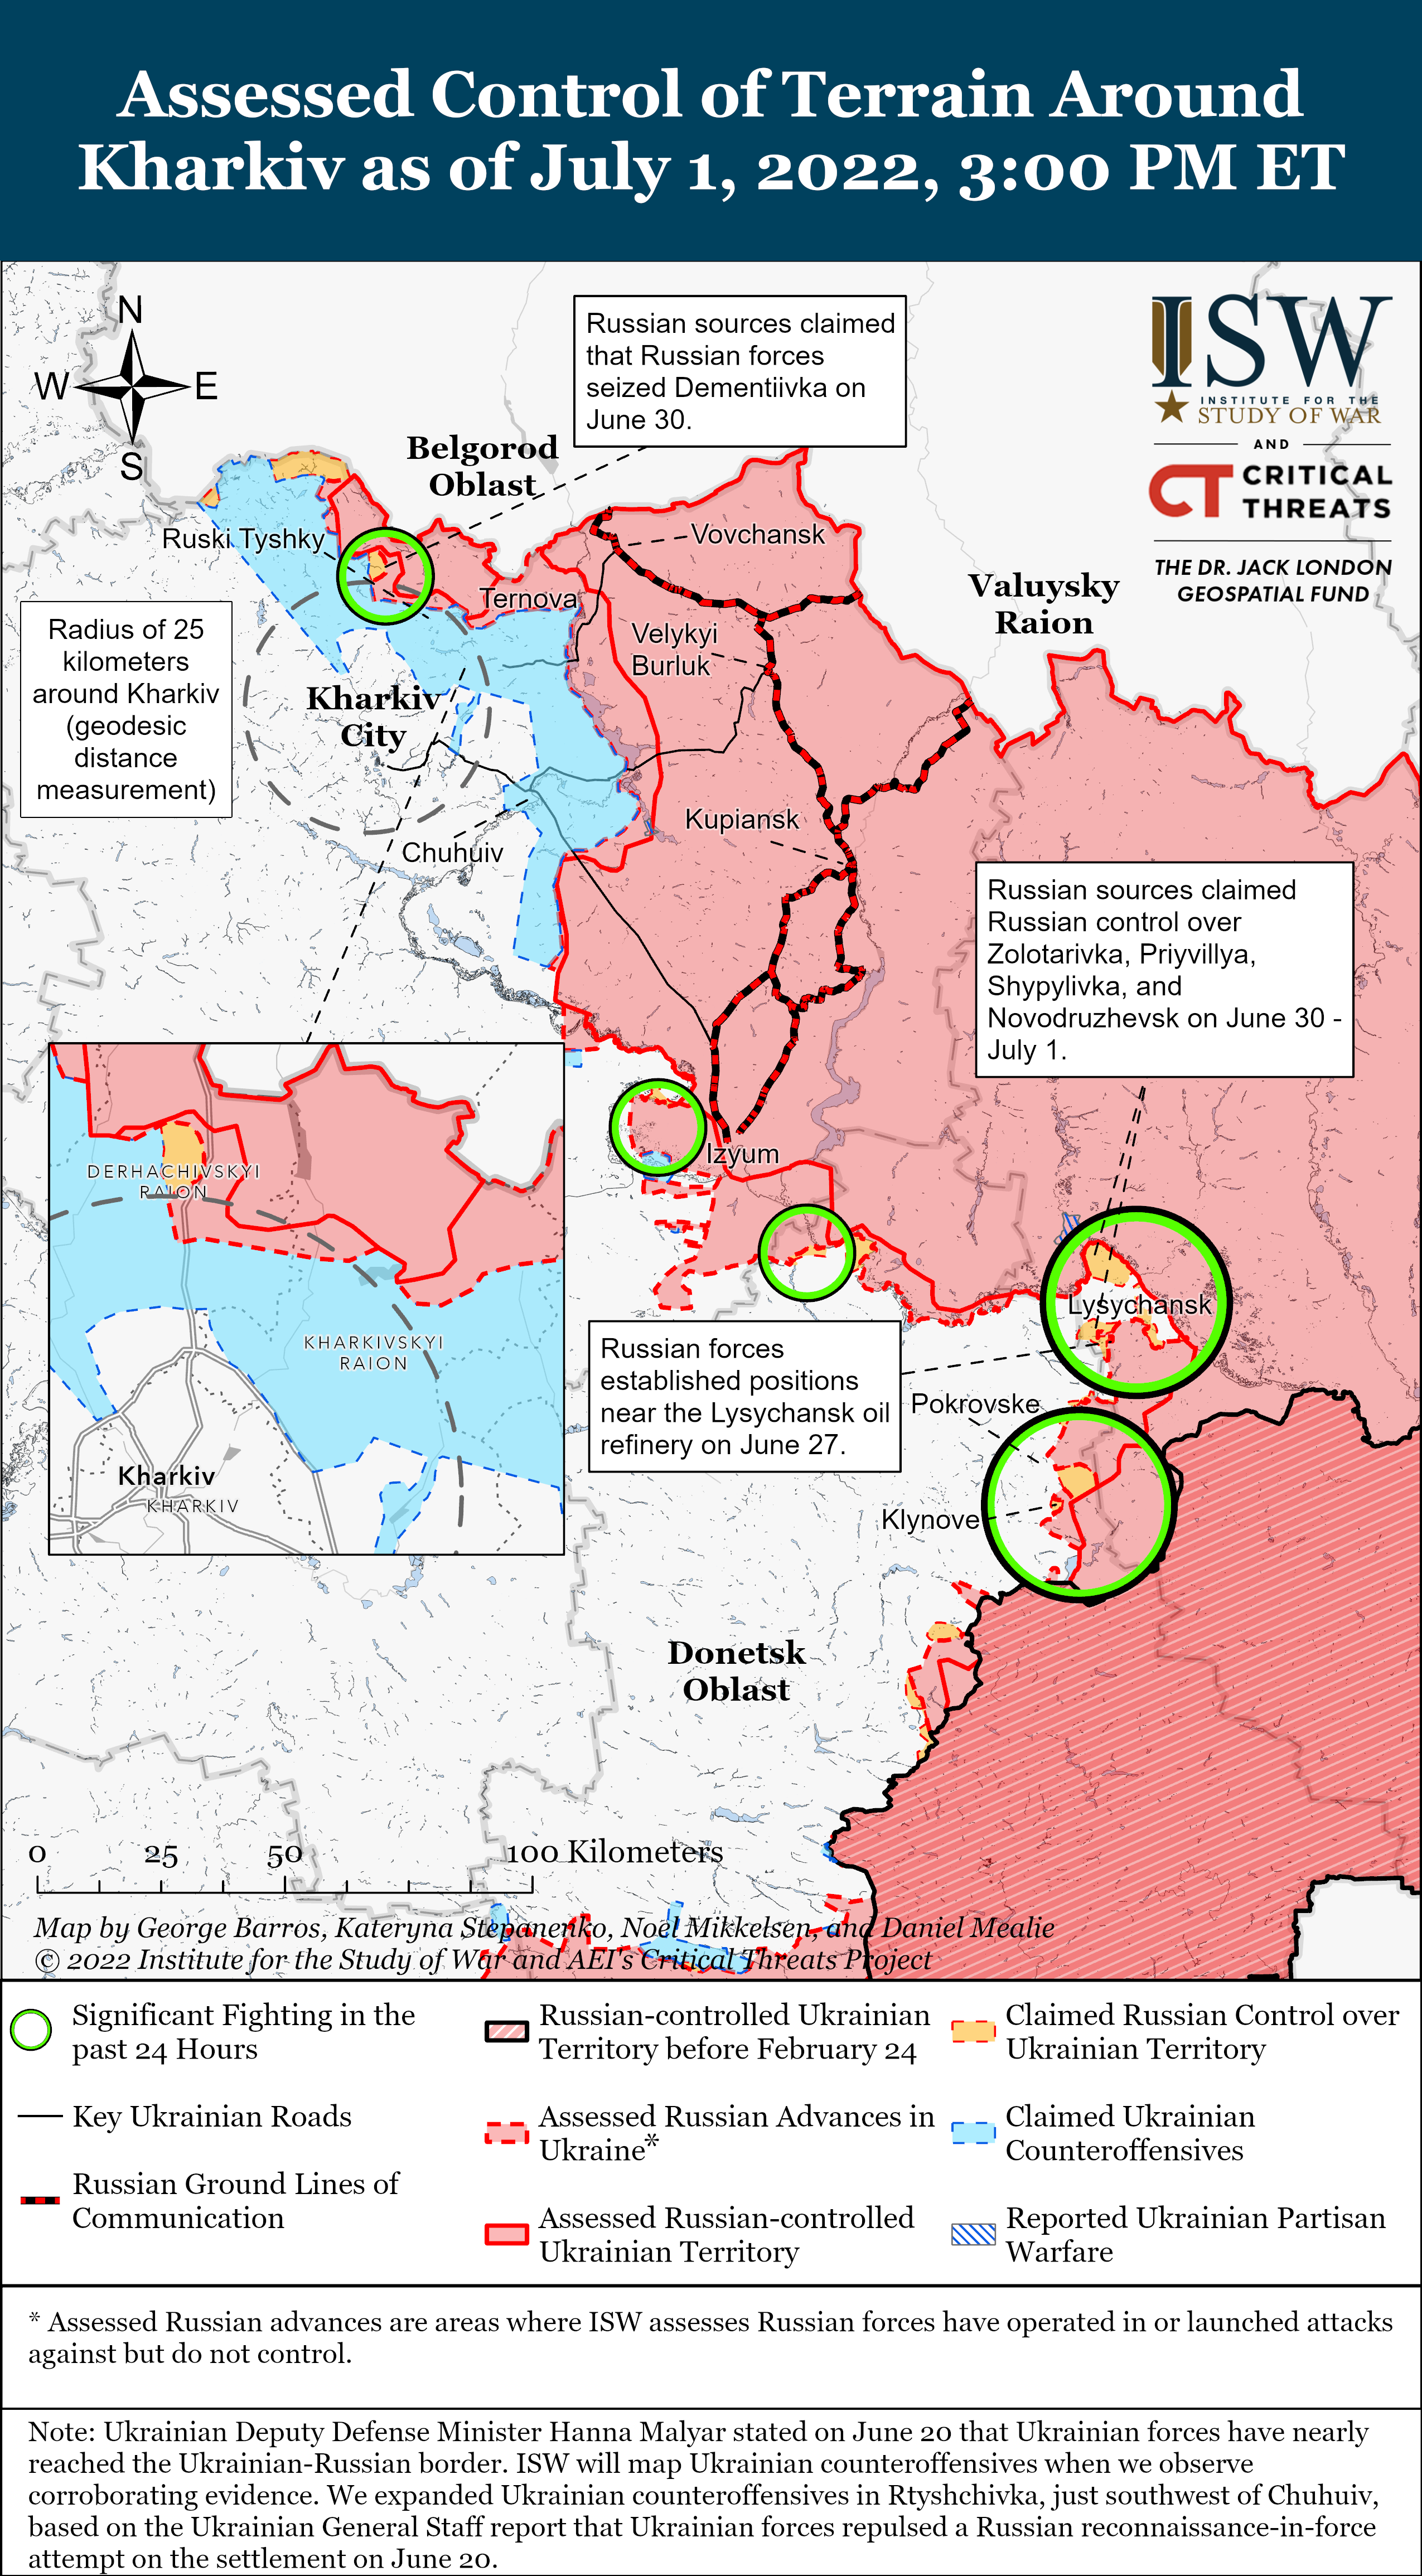 Wie ist der aktuelle Stand (01.07.22) der russischen Truppen in der Ukraine?